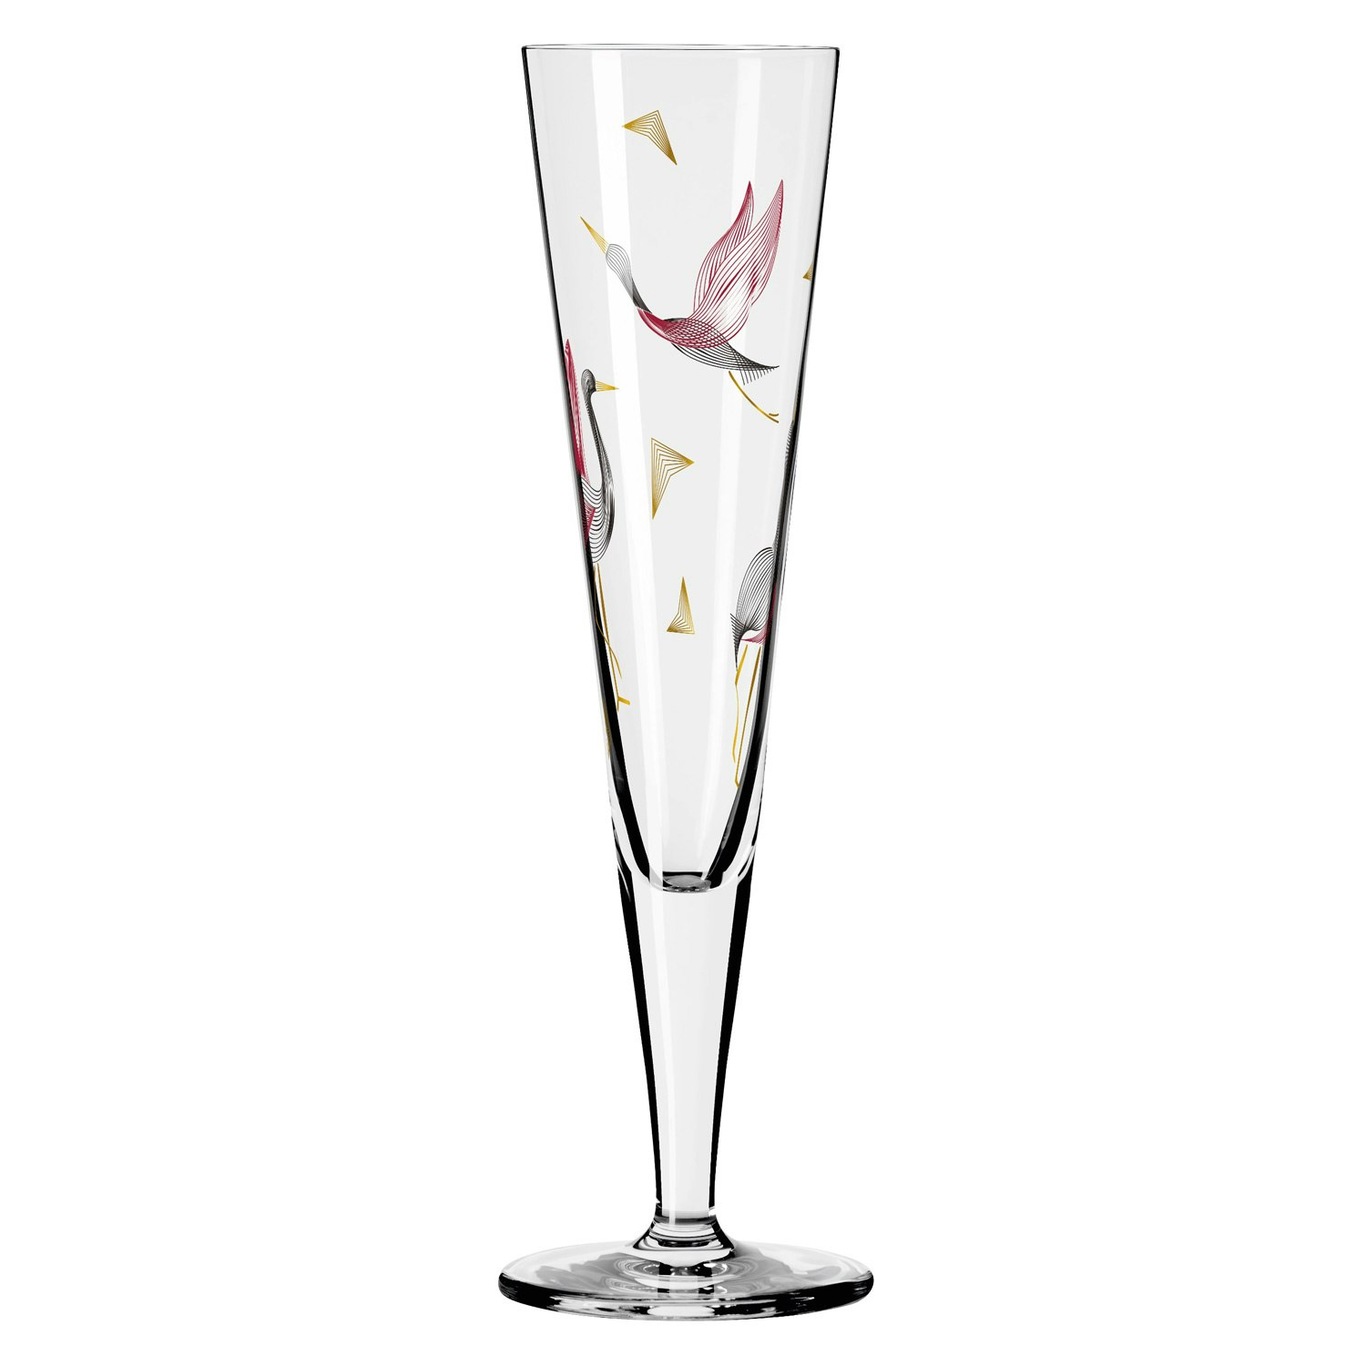 Goldnacht Champagne Glass, NO: 15